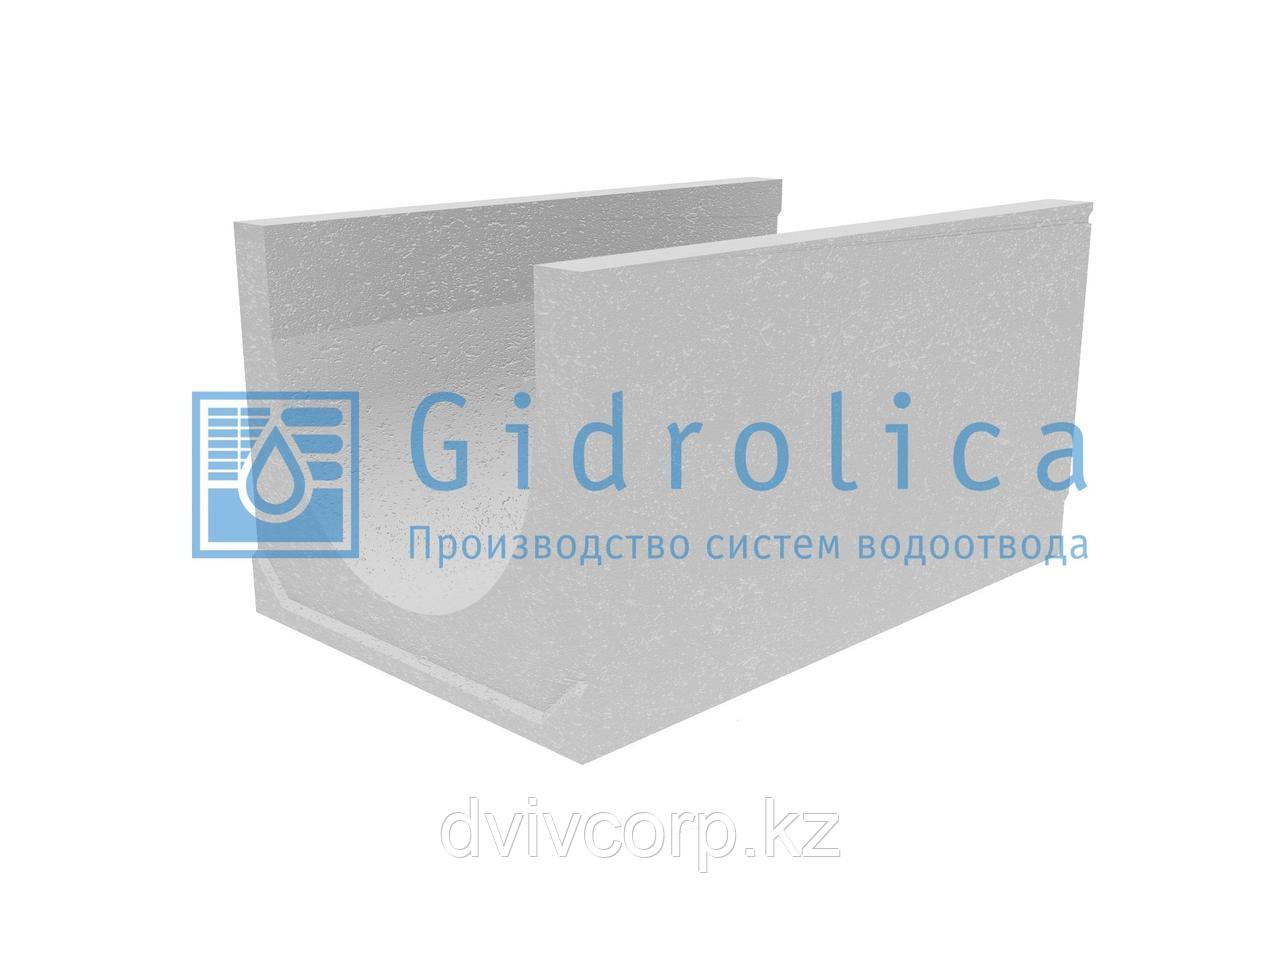 Лоток водоотводный бетонный коробчатый (СО-500мм), с уклоном 0,5%  КUу 100.65(50).53(44) - BGU-XL, № 16